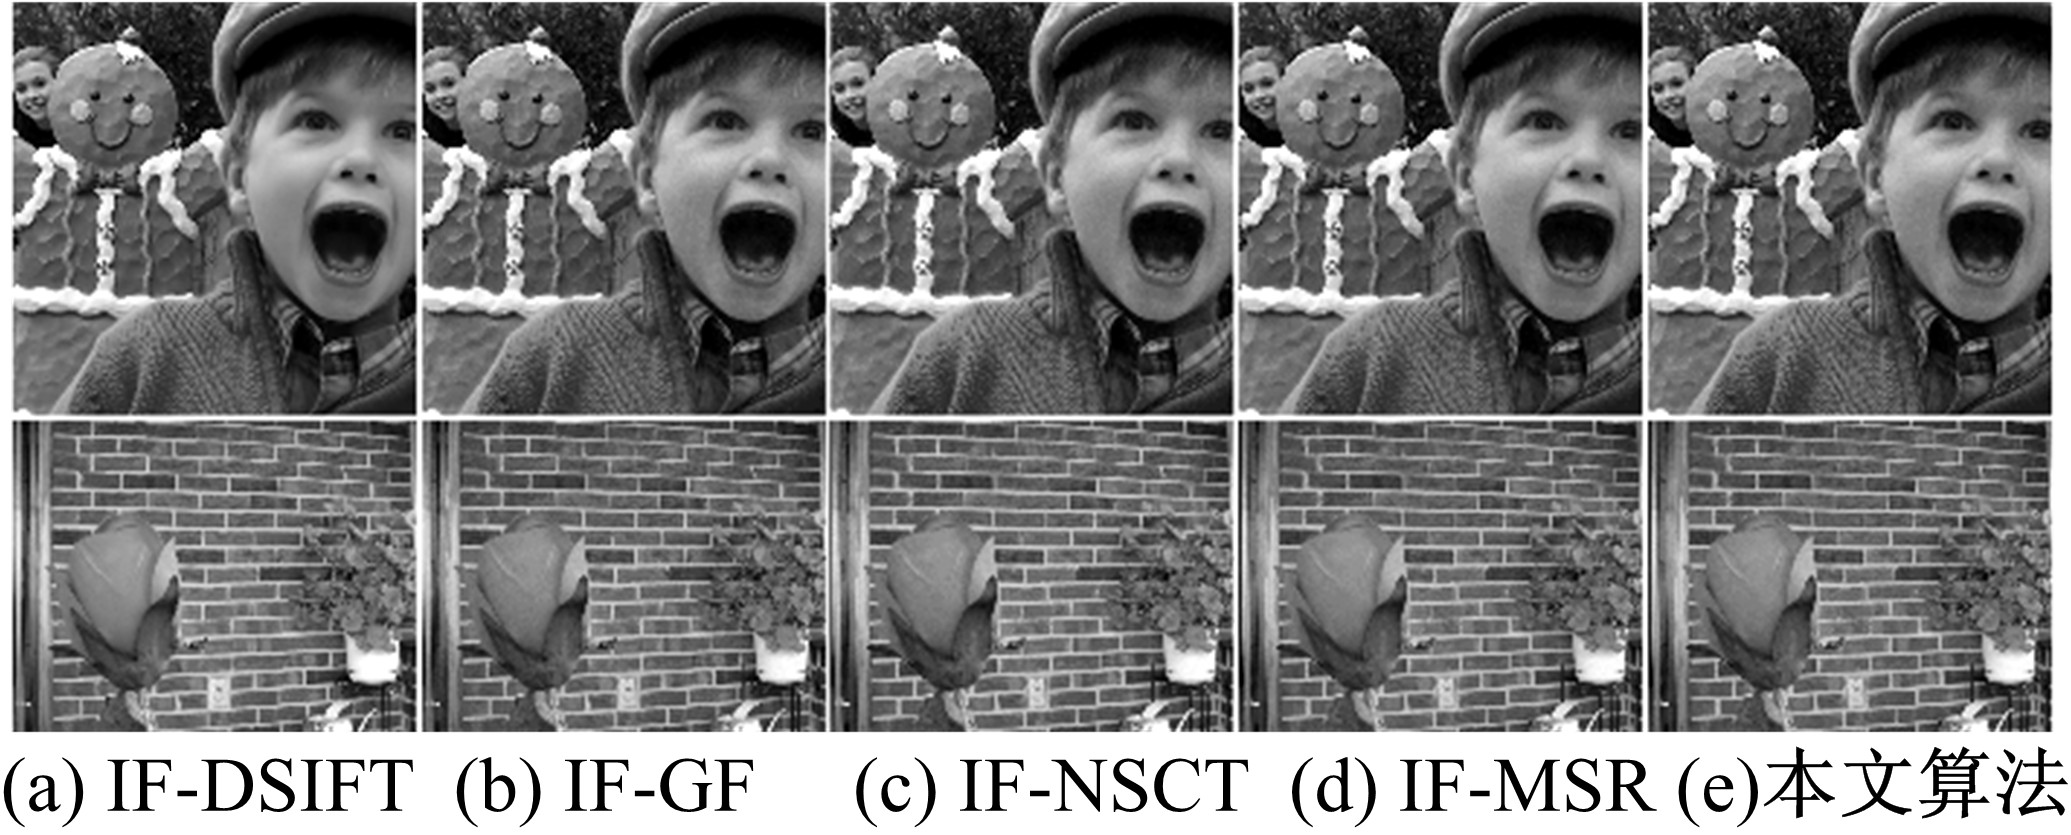 数字图像融合算法分析与应用: 3.4.4 实验结果分析(nsct-ip cnn,nsct-ip) - AI牛丝